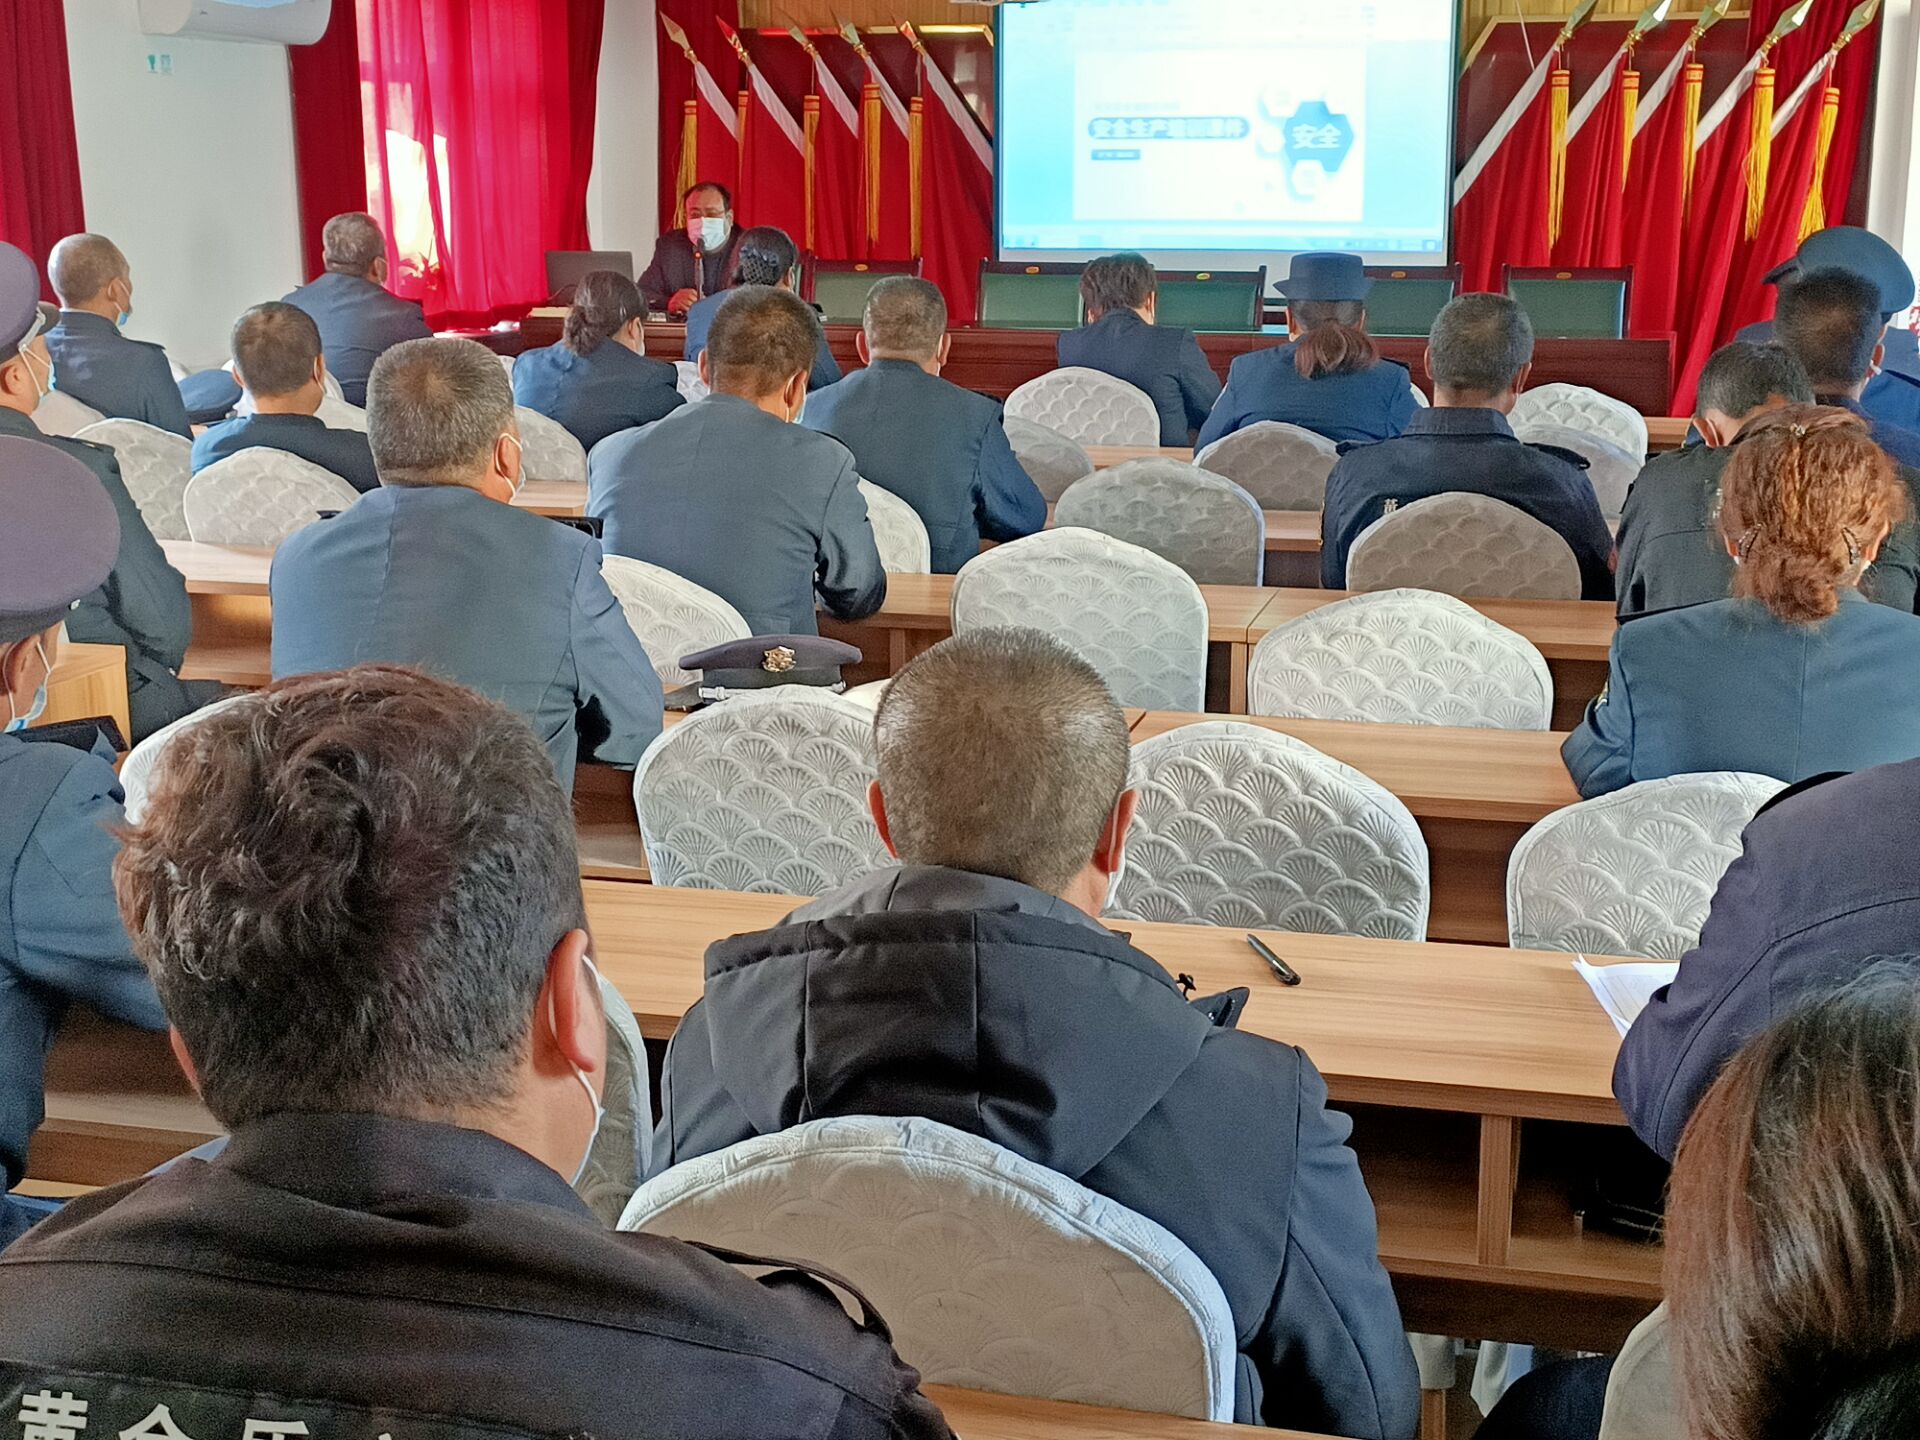 新疆黄金盾保安服务有限公司召开班长培训会议